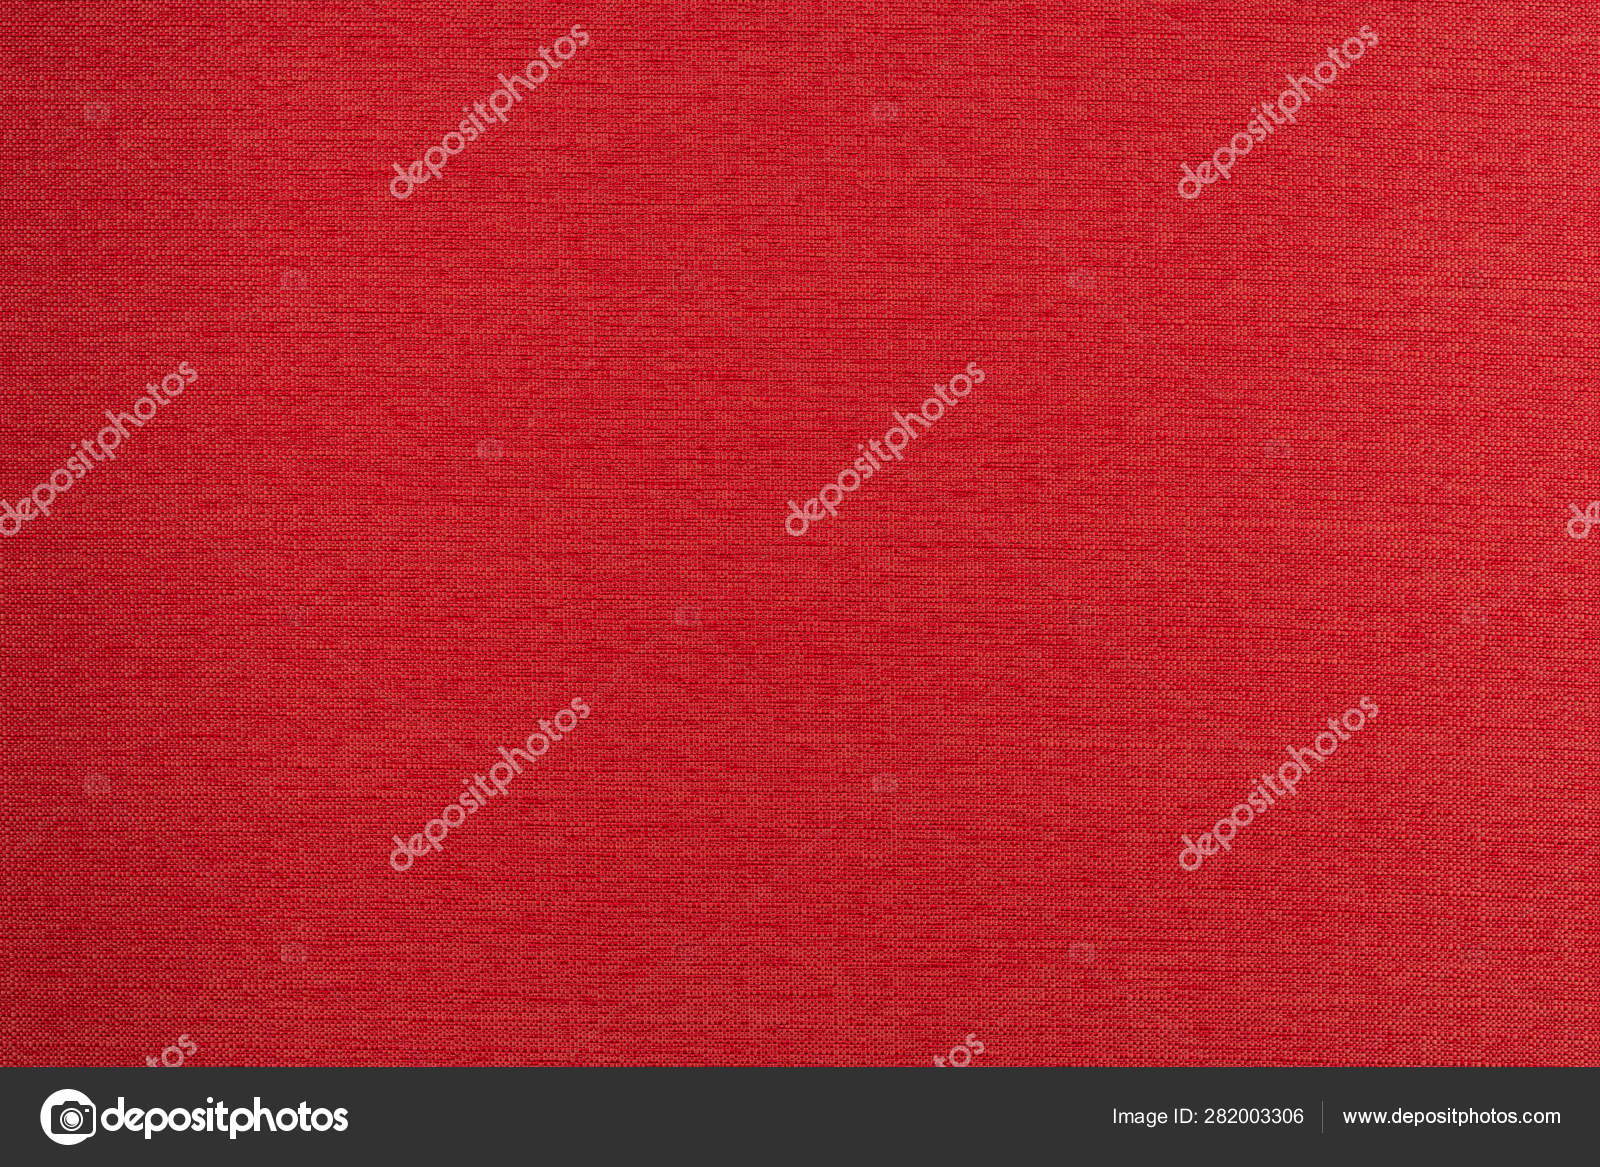 Roter Stoff Hintergrund Textur. rotes Tuch. - Stockfotografie: lizenzfreie  Fotos © DGolbay 282003306